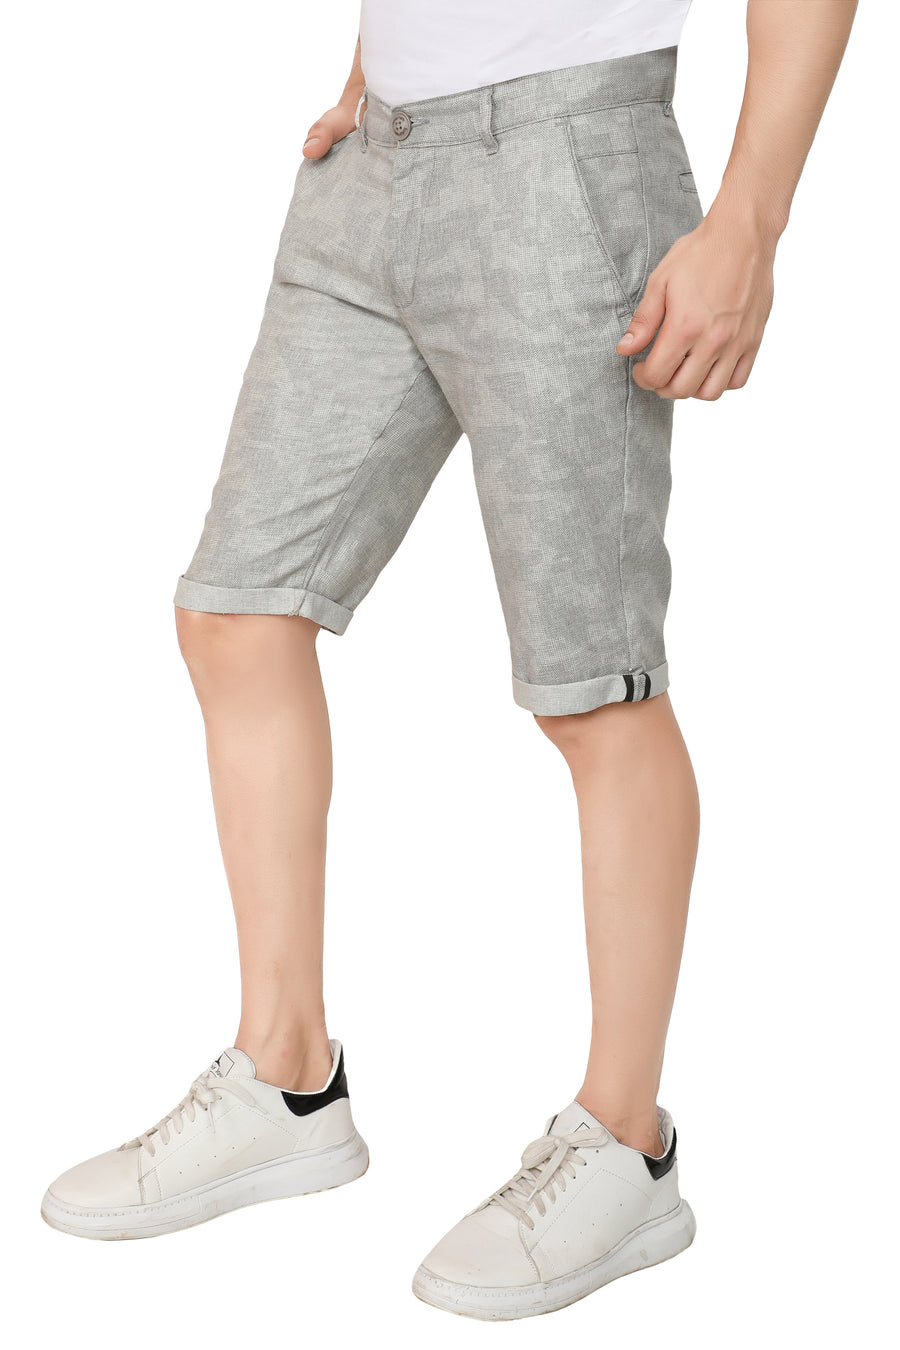 Men's Grey Linen Cotton Shorts